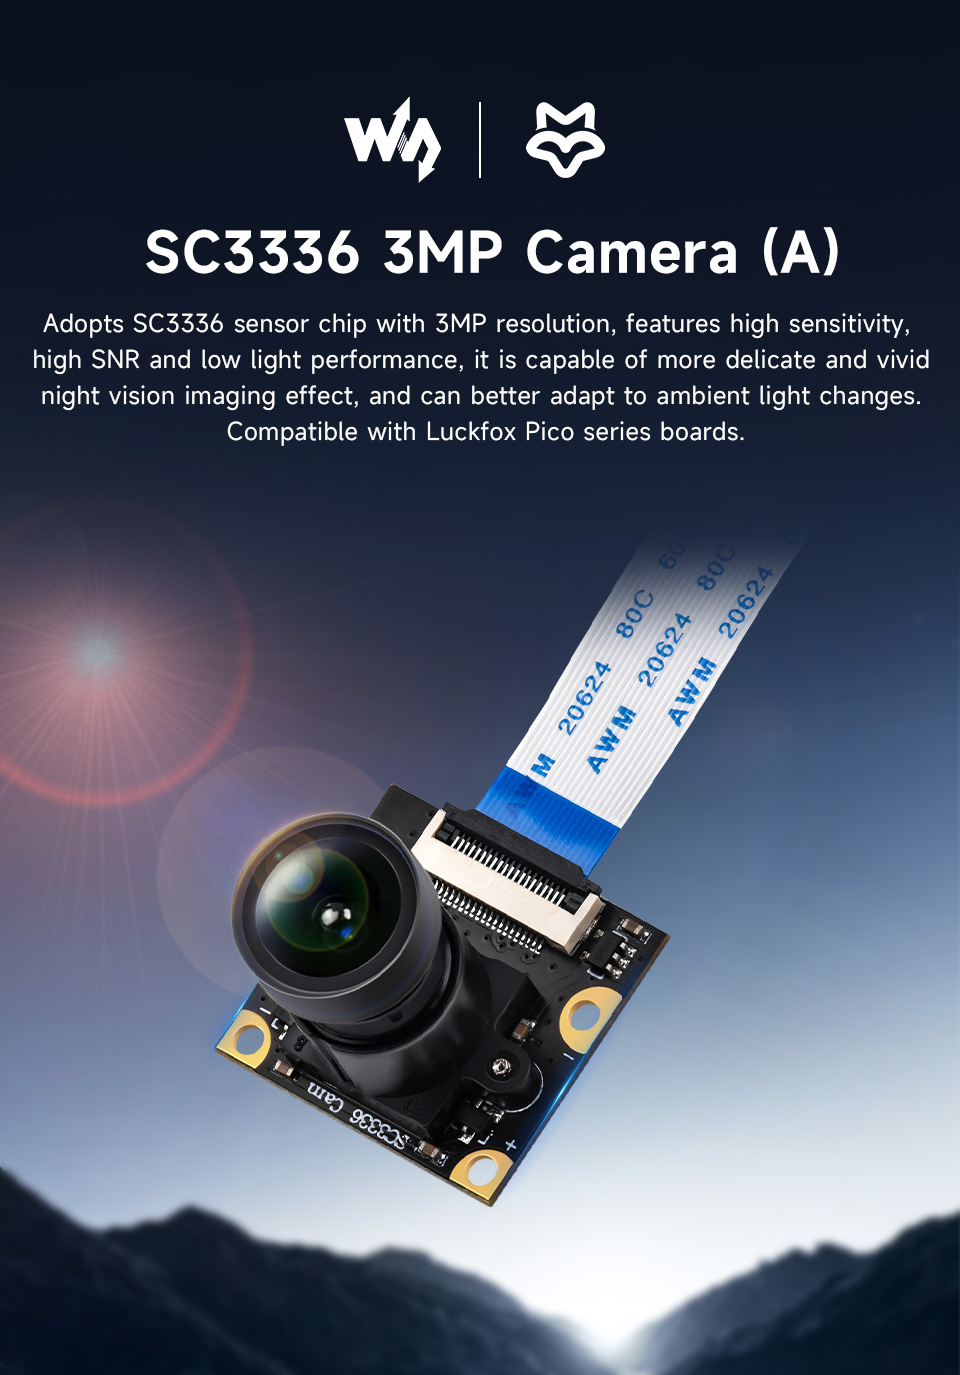 SC3336-3MP-Camera-A-details-1.jpg